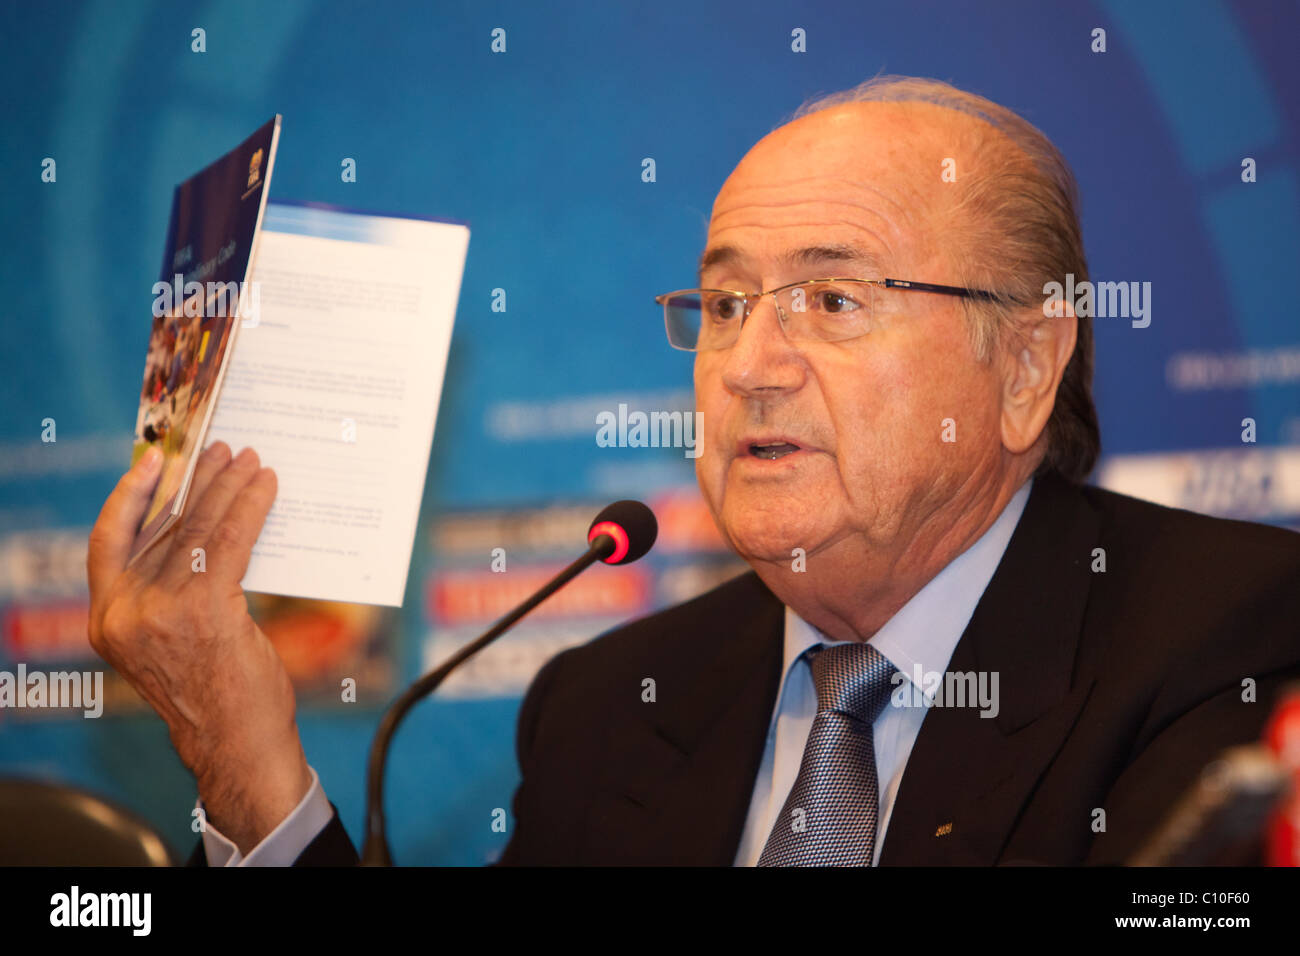 Le Président de la FIFA Sepp Blatter détient une copie de le Code disciplinaire de la FIFA tout en répondant à une question lors d'une conférence de presse U20. Banque D'Images